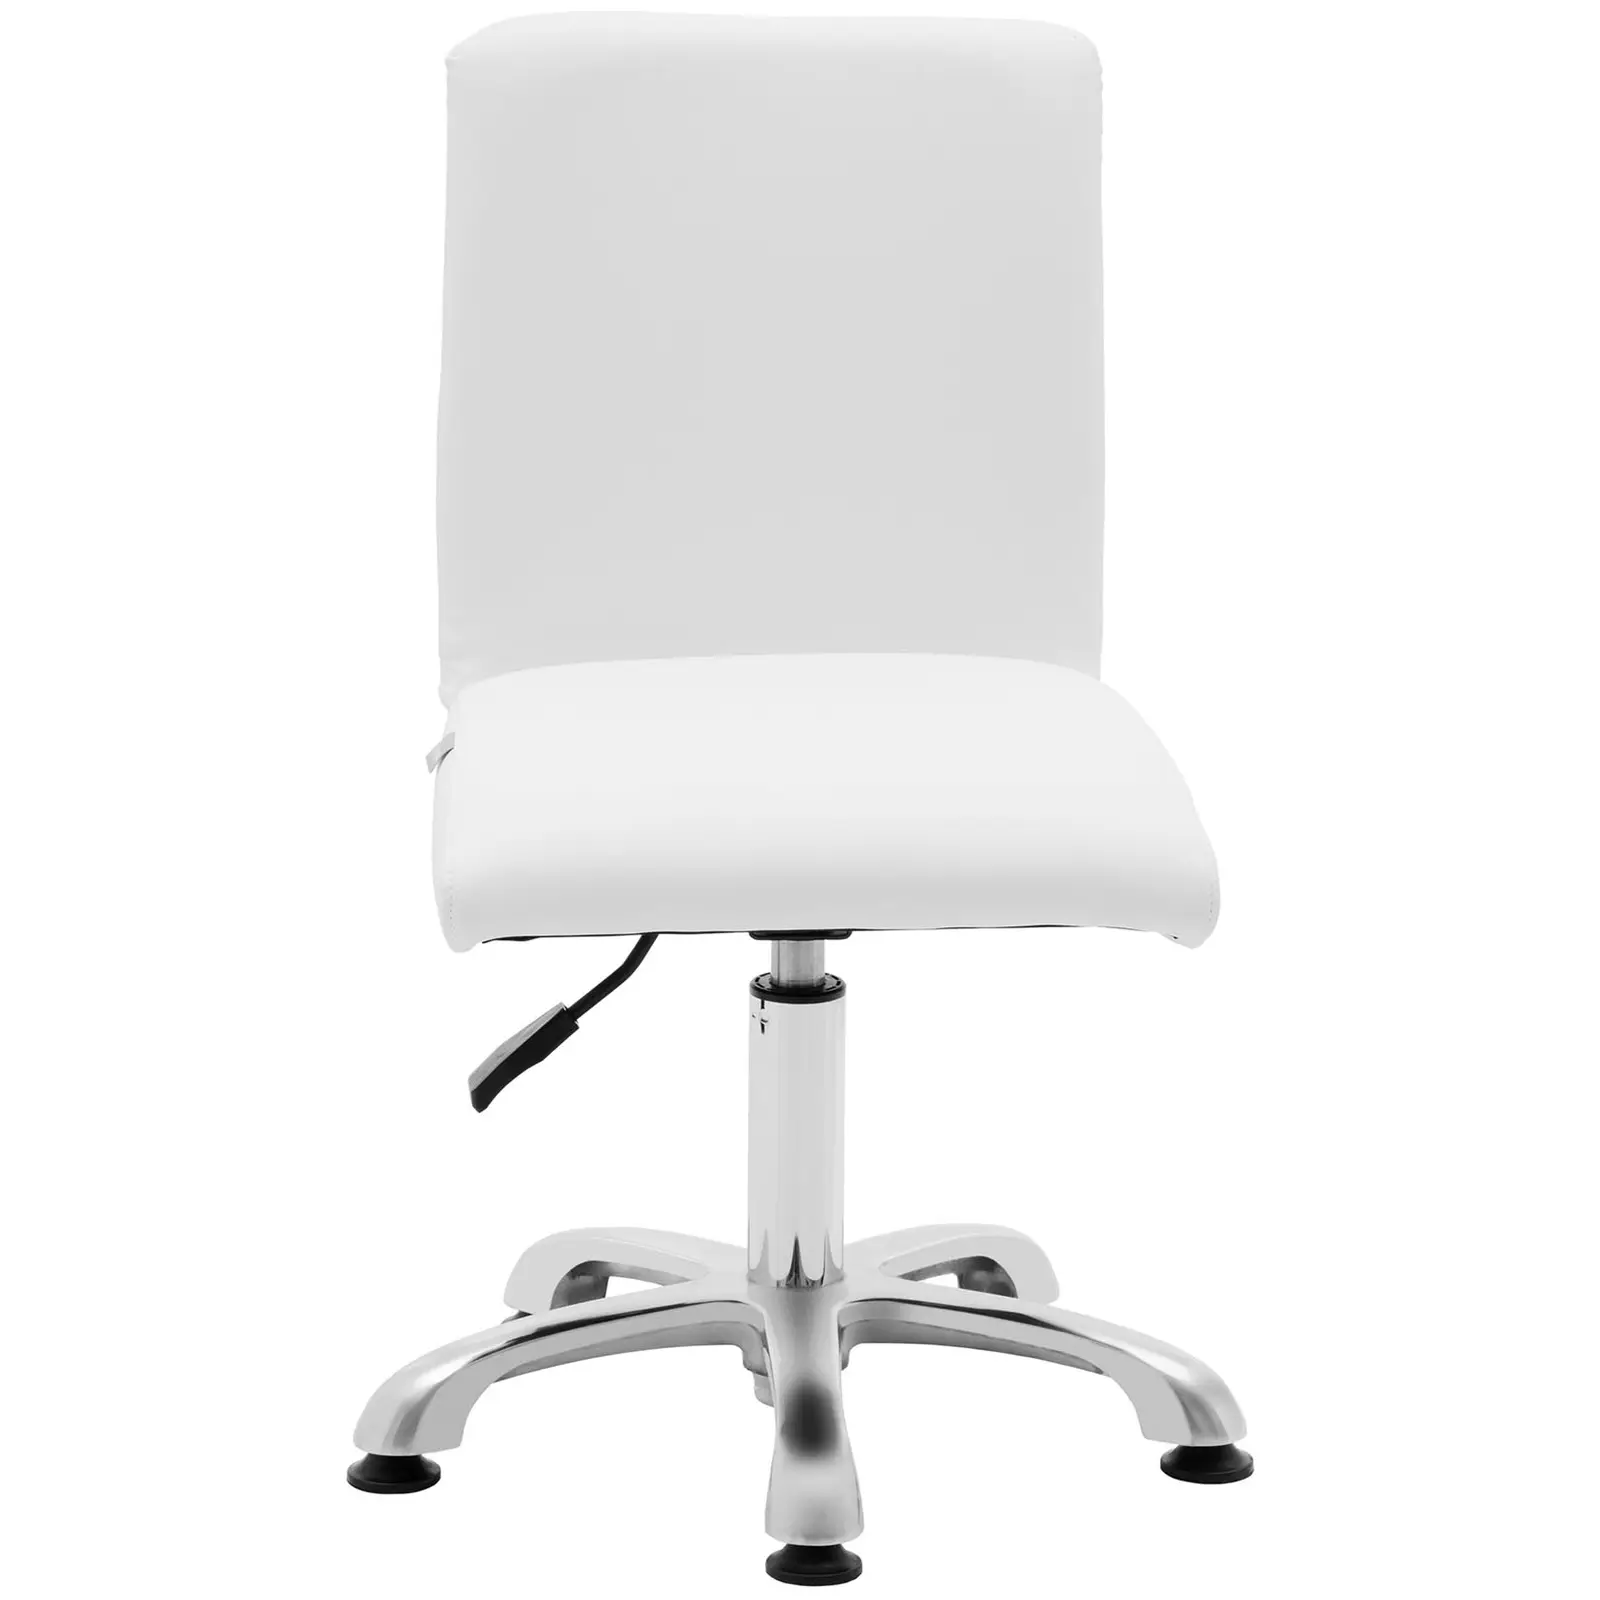 B-zboží Otočná židle s opěradlem - 38–52 cm - 150 kg - bílá